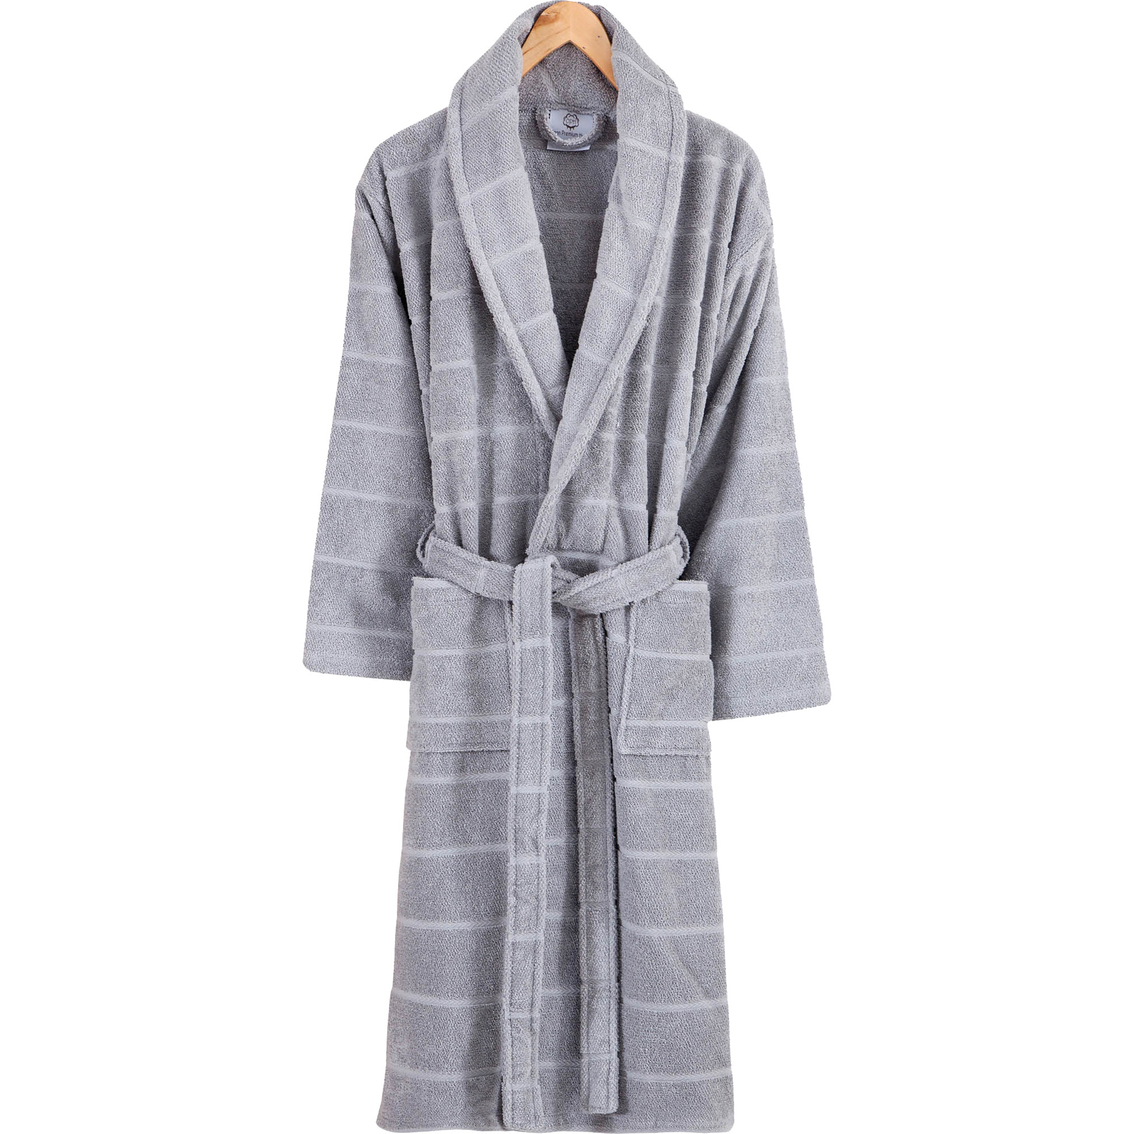 Ozan Premium Home Mirage Collection Unisex Bathrobe | Pajamas & Robes ...